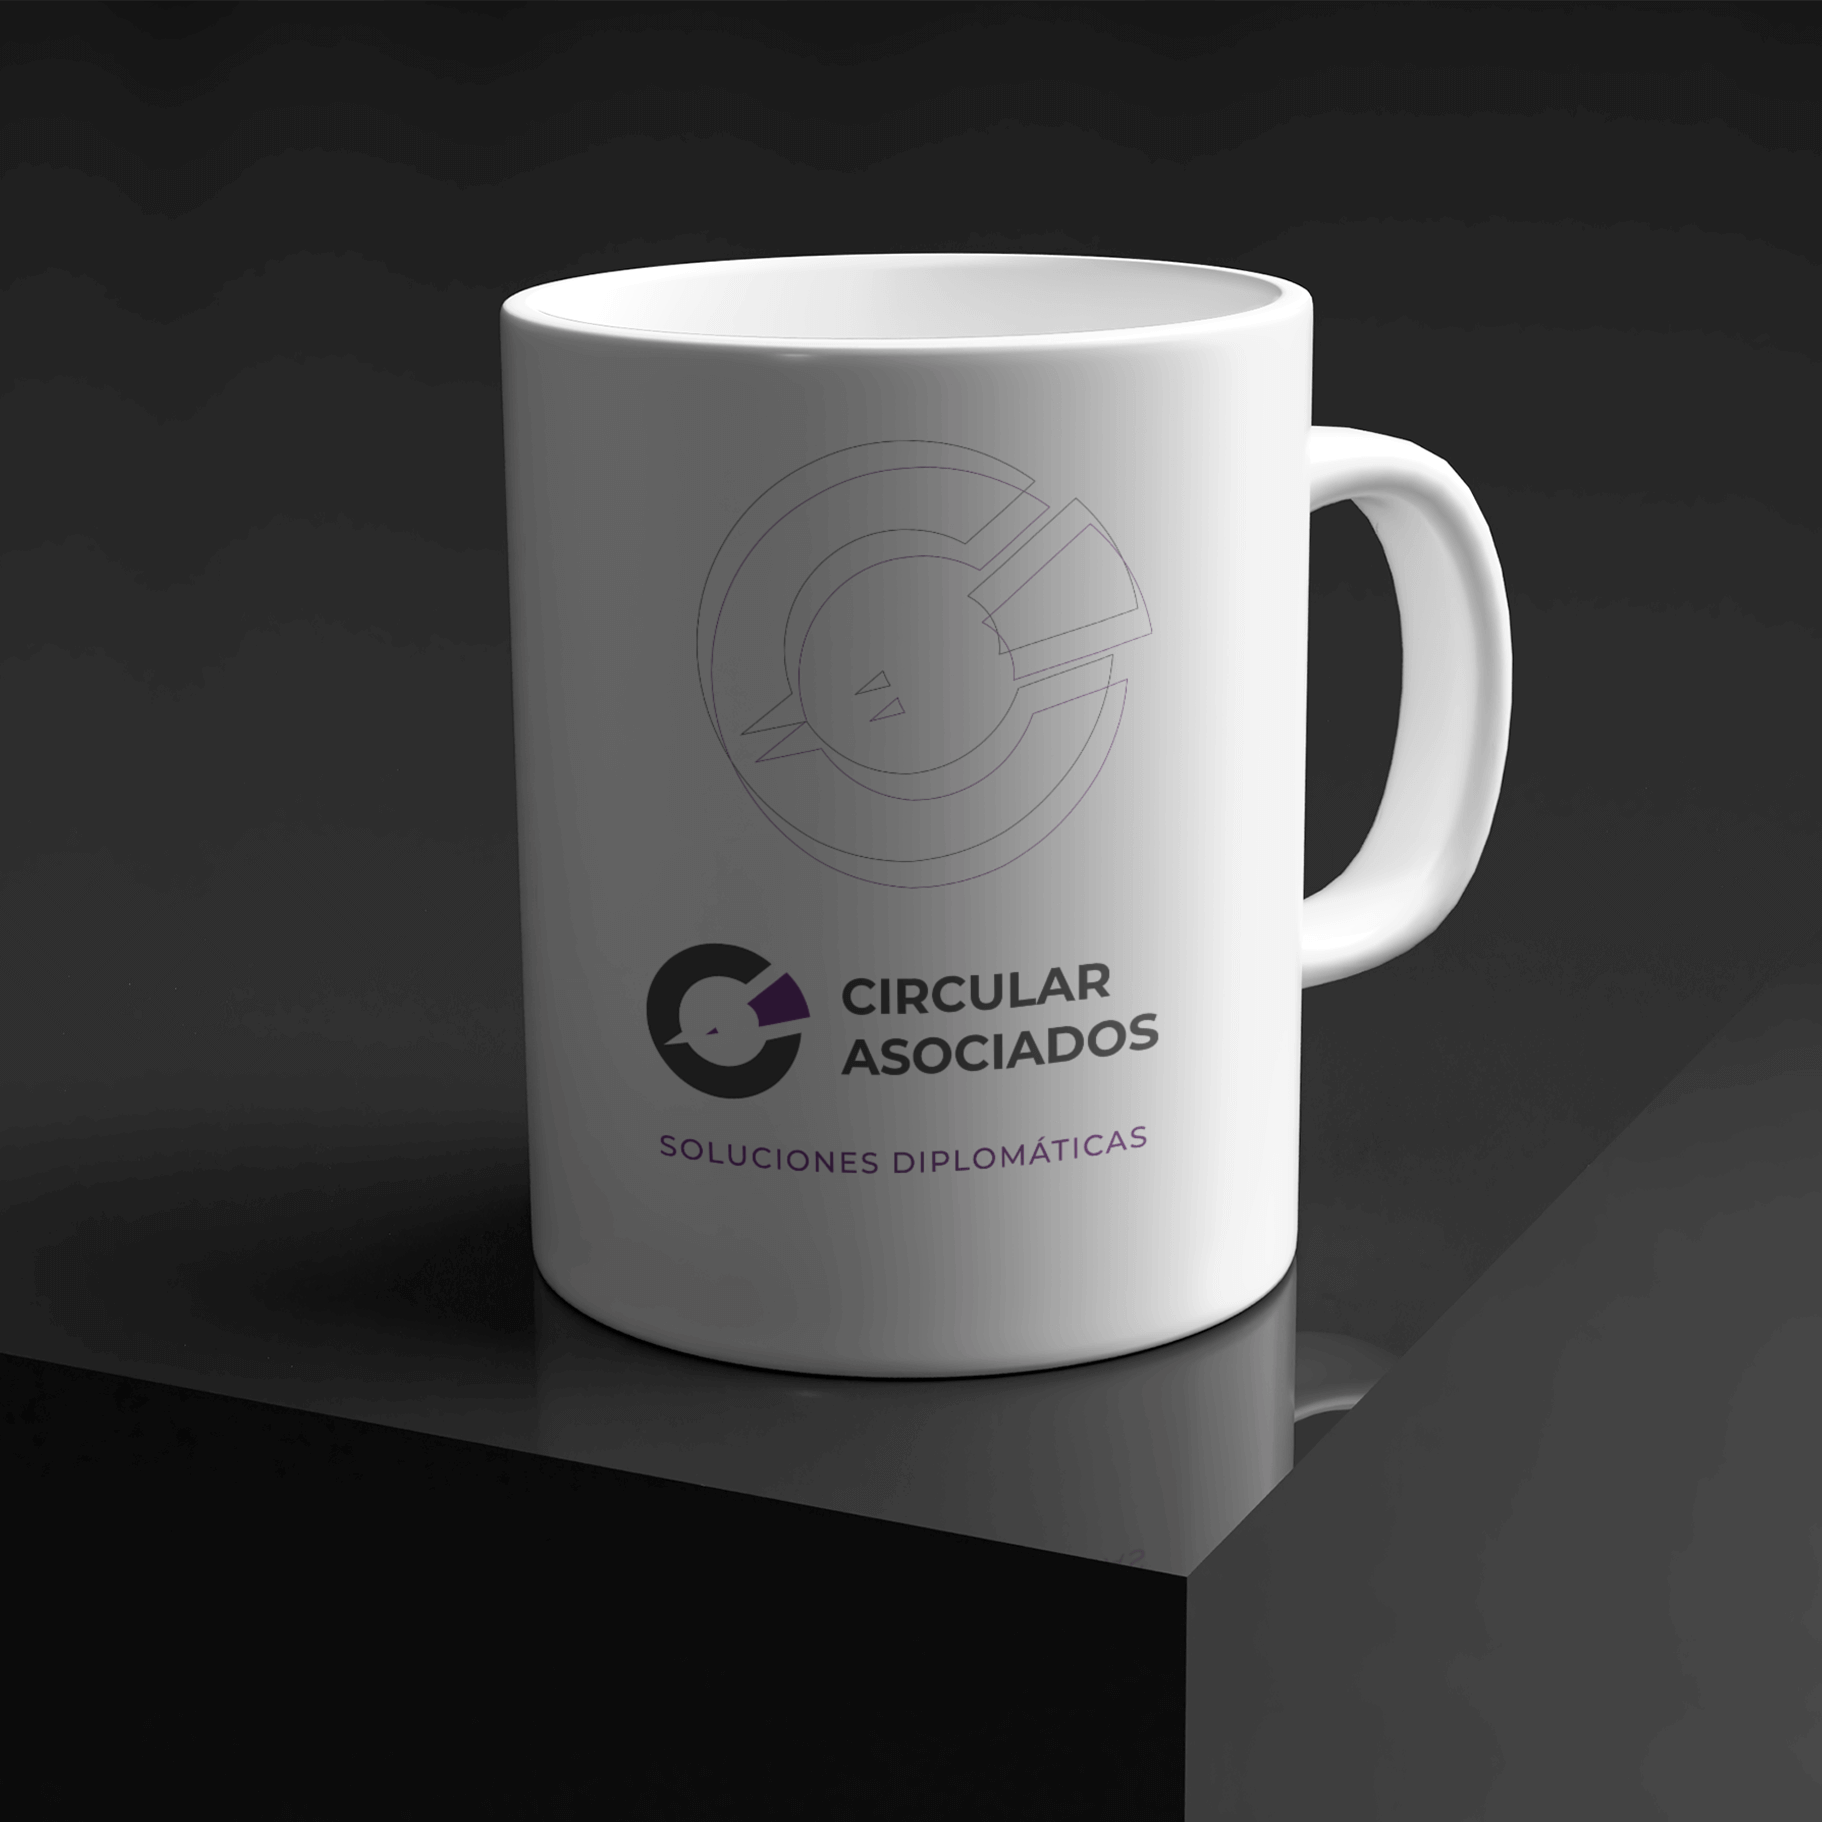 Imagen de una taza banca rotulada con el logotipo y los recursos gráficos de la empresa Circular Asociados, en sus colores corporativos: gris oscuro y morado